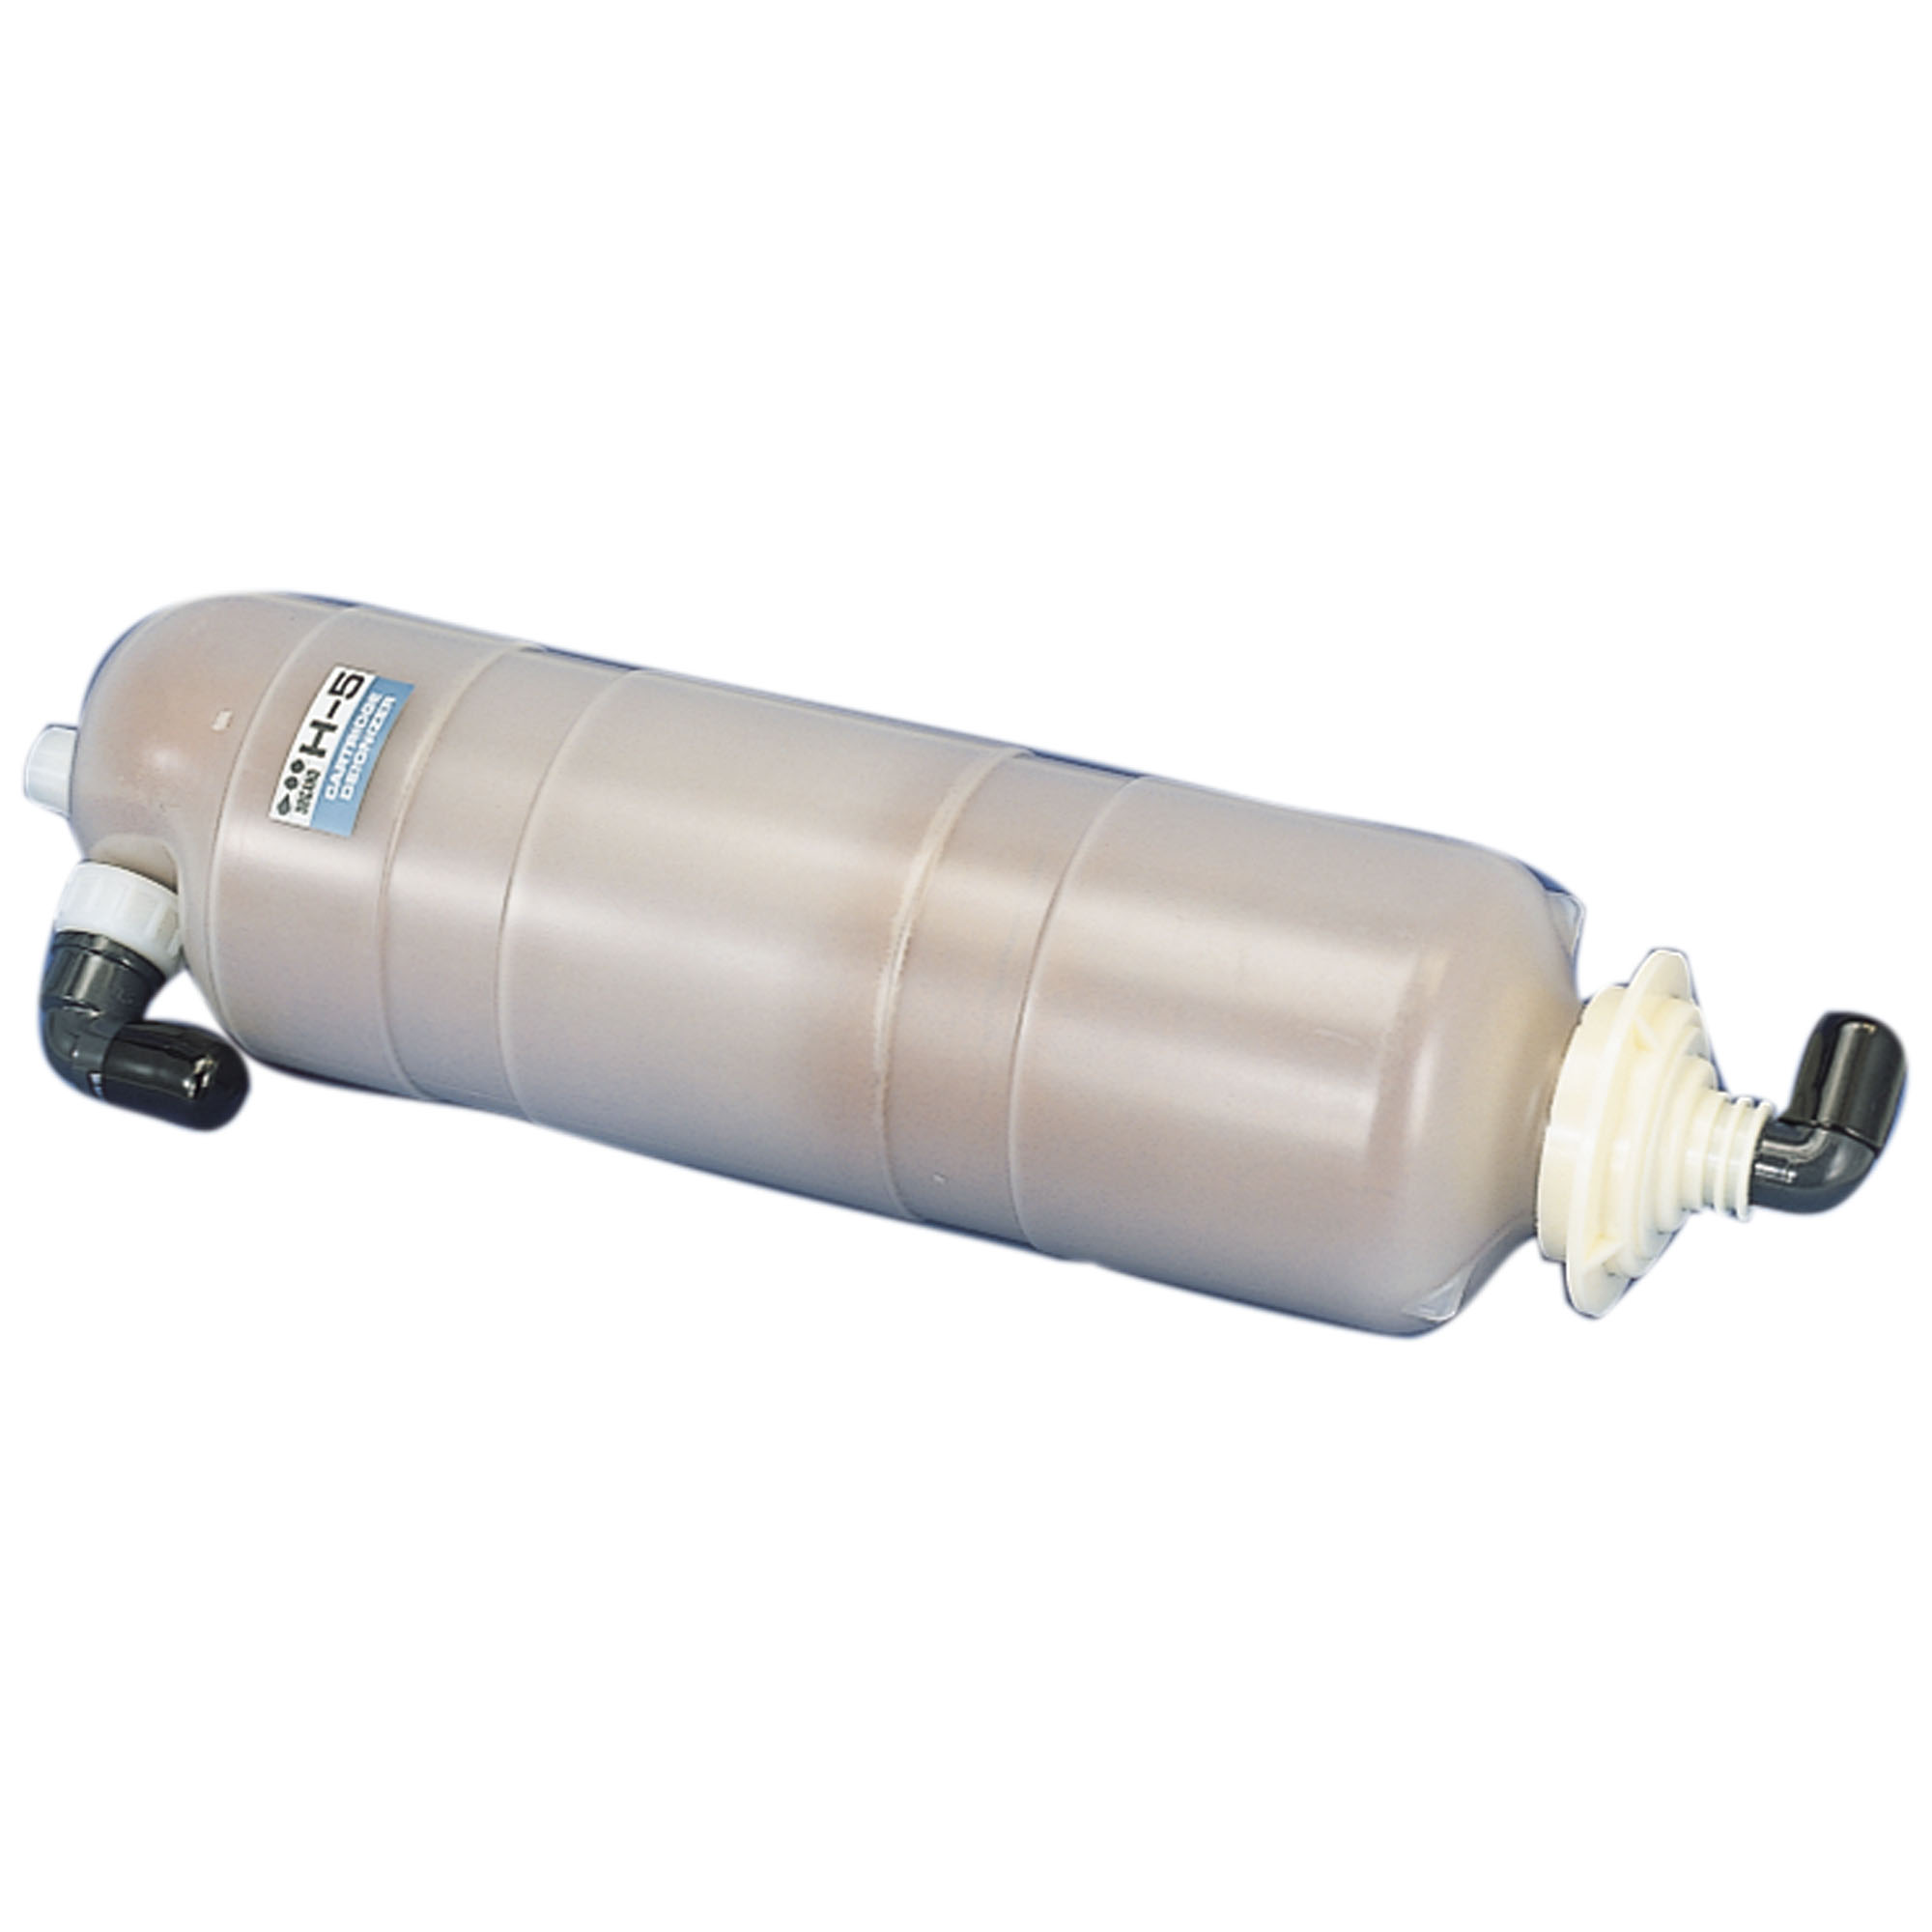 053200-021 小型純水製造装置 ピュアポート PP-201用 イオン交換樹脂 柴田科学(SIBATA)